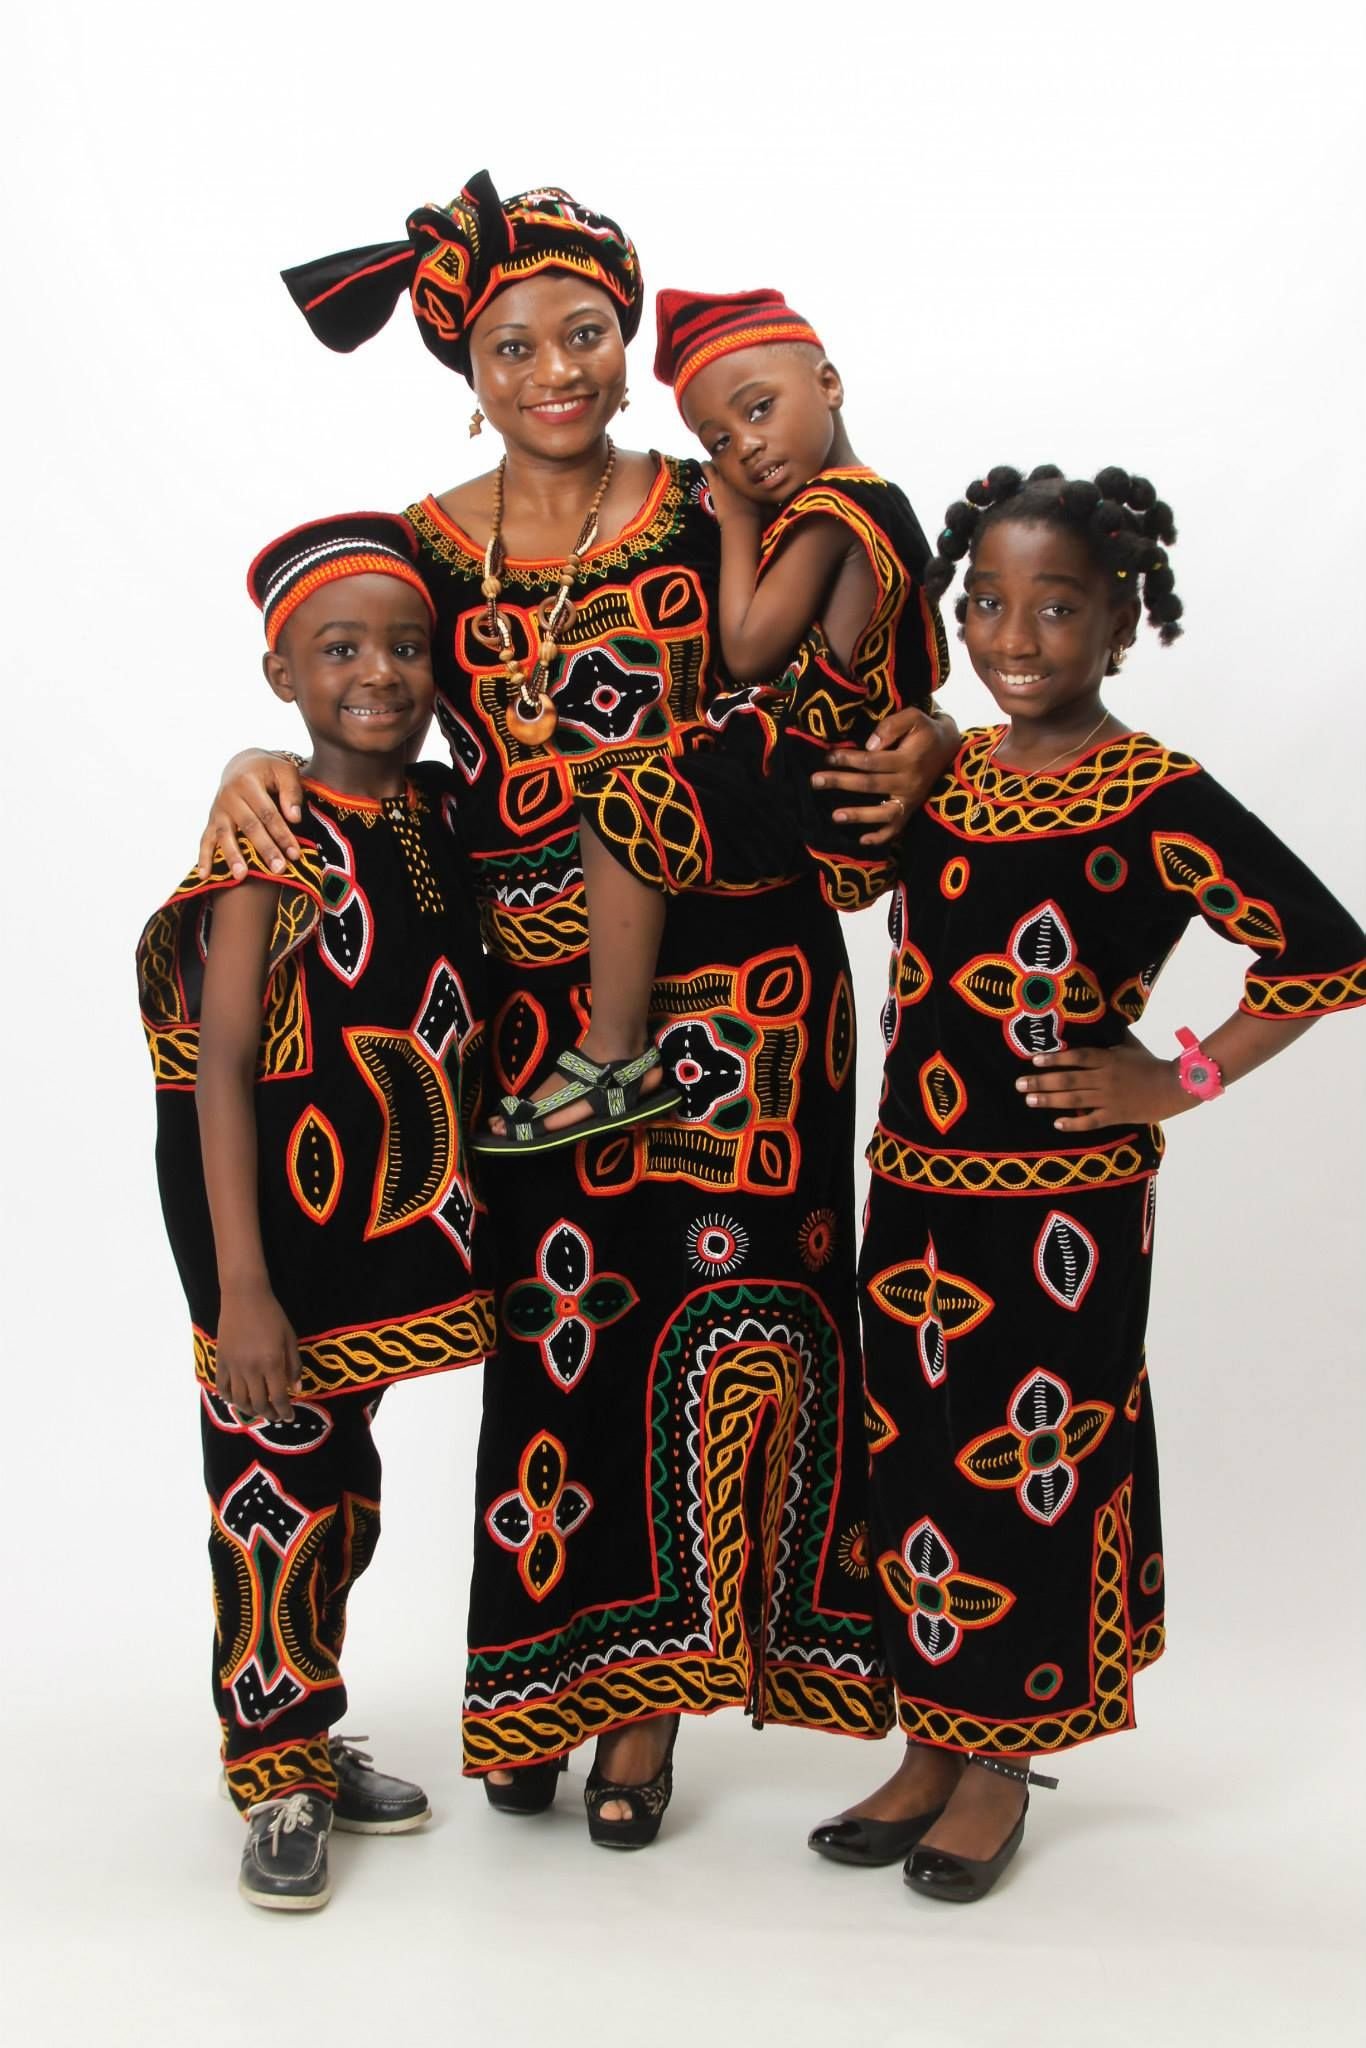 Костюм негритянки. Национальный костюм Камеруна. Африкано Омск группа Африкана шоу. Африканский костюм. Костюм африканца.